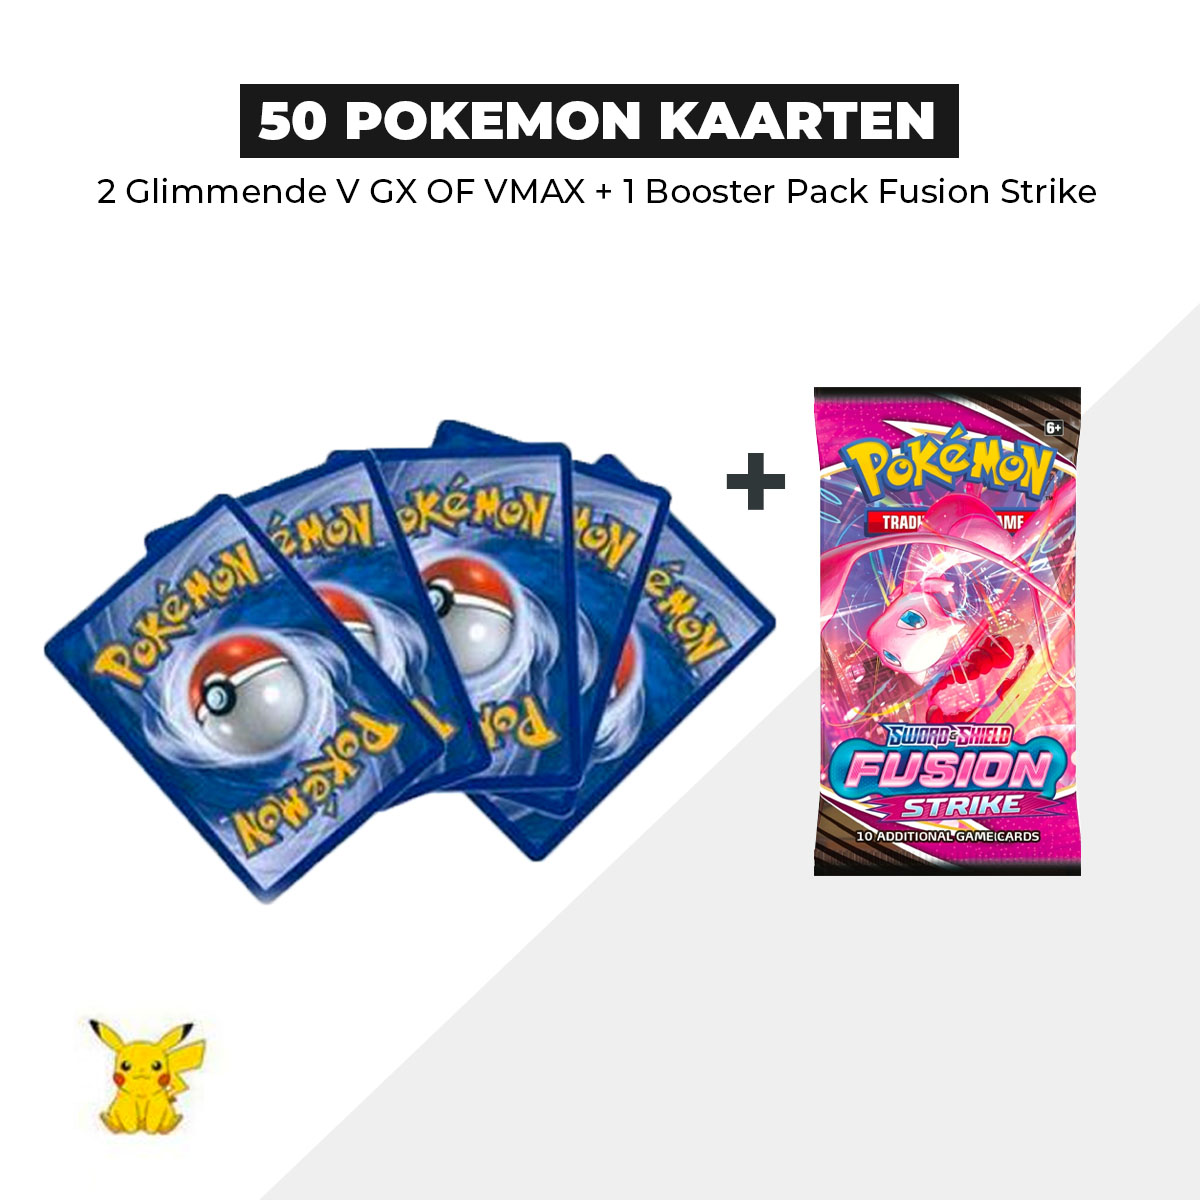 50 Pokémon Kaarten Bundel + 1 Fusion strike Booster pack